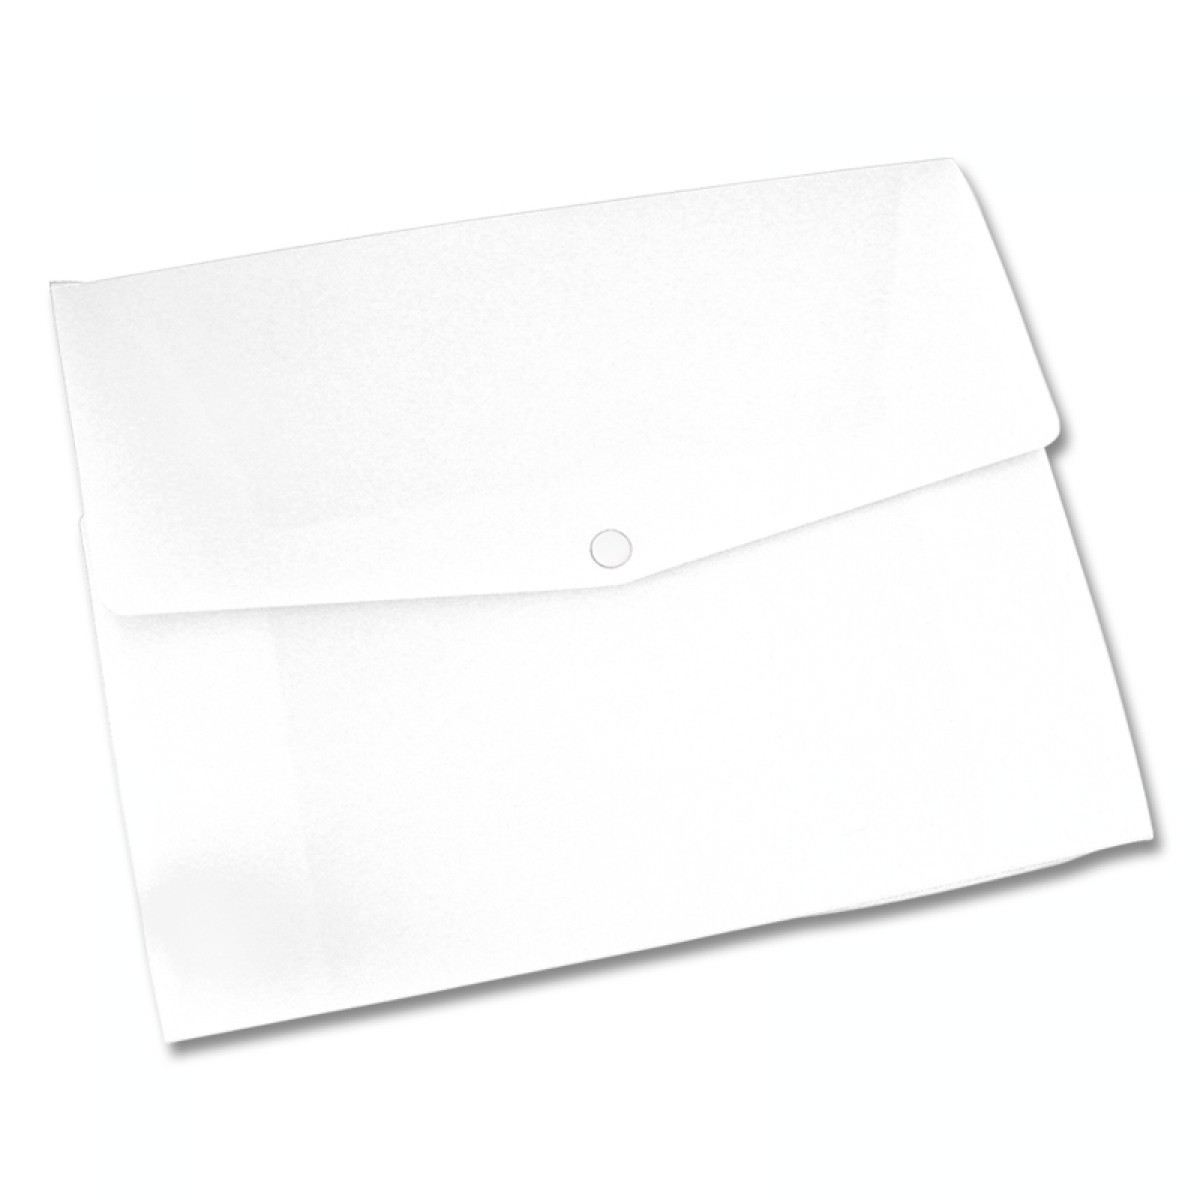 Конверт для бумаг 5 букв. Папка-конверт а4 на кнопке "Aurora Borealis". Пластиковый папка-конверт белый. Папка белая пластиковая. Прозрачный конверт на кнопке.